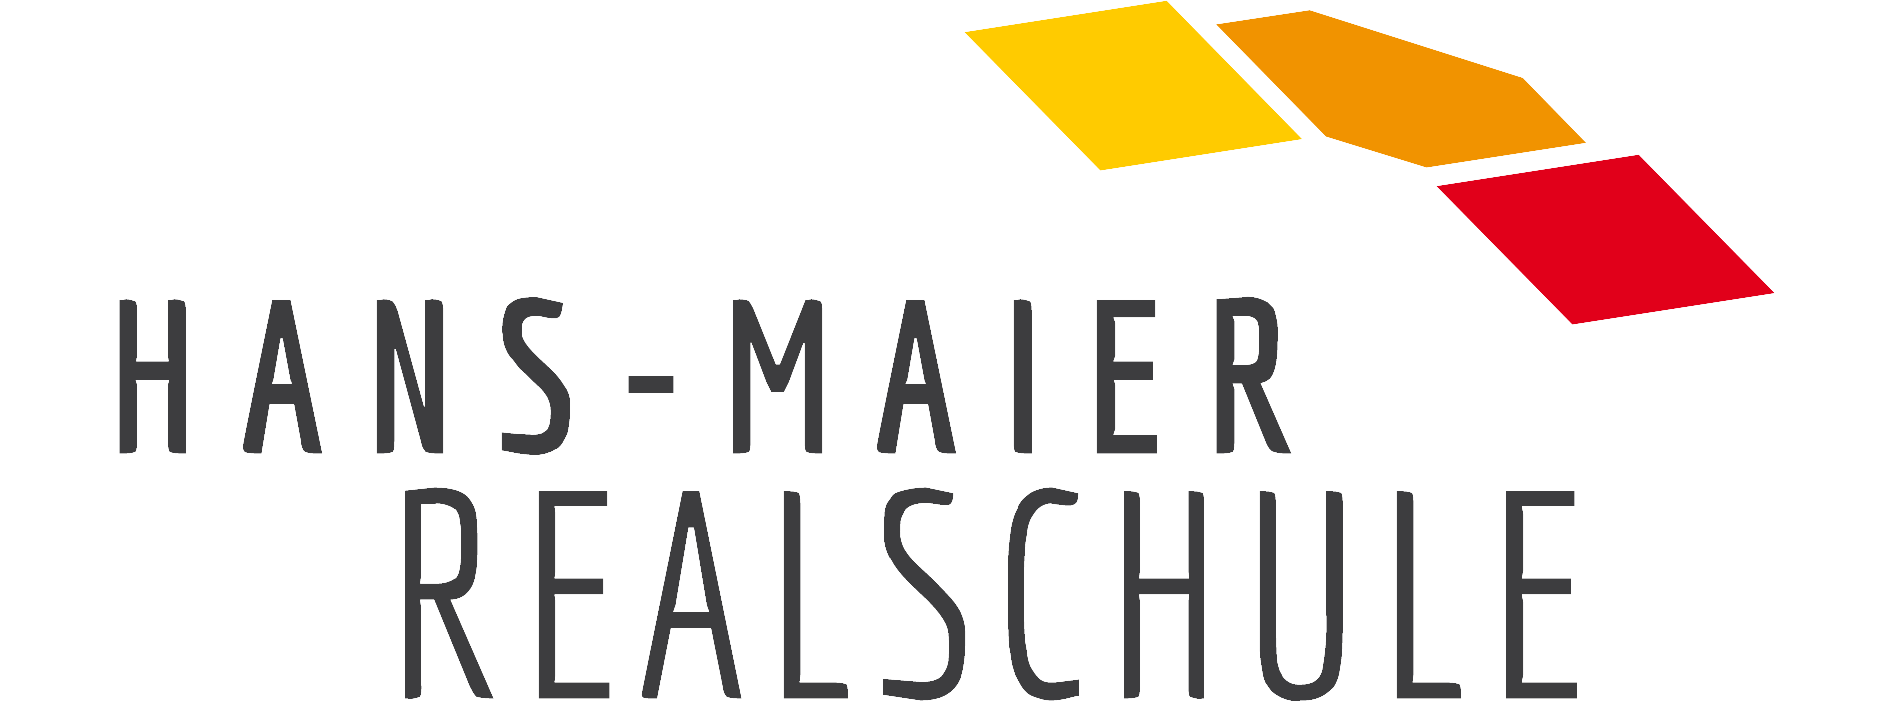 Hans-Maier-Realschule